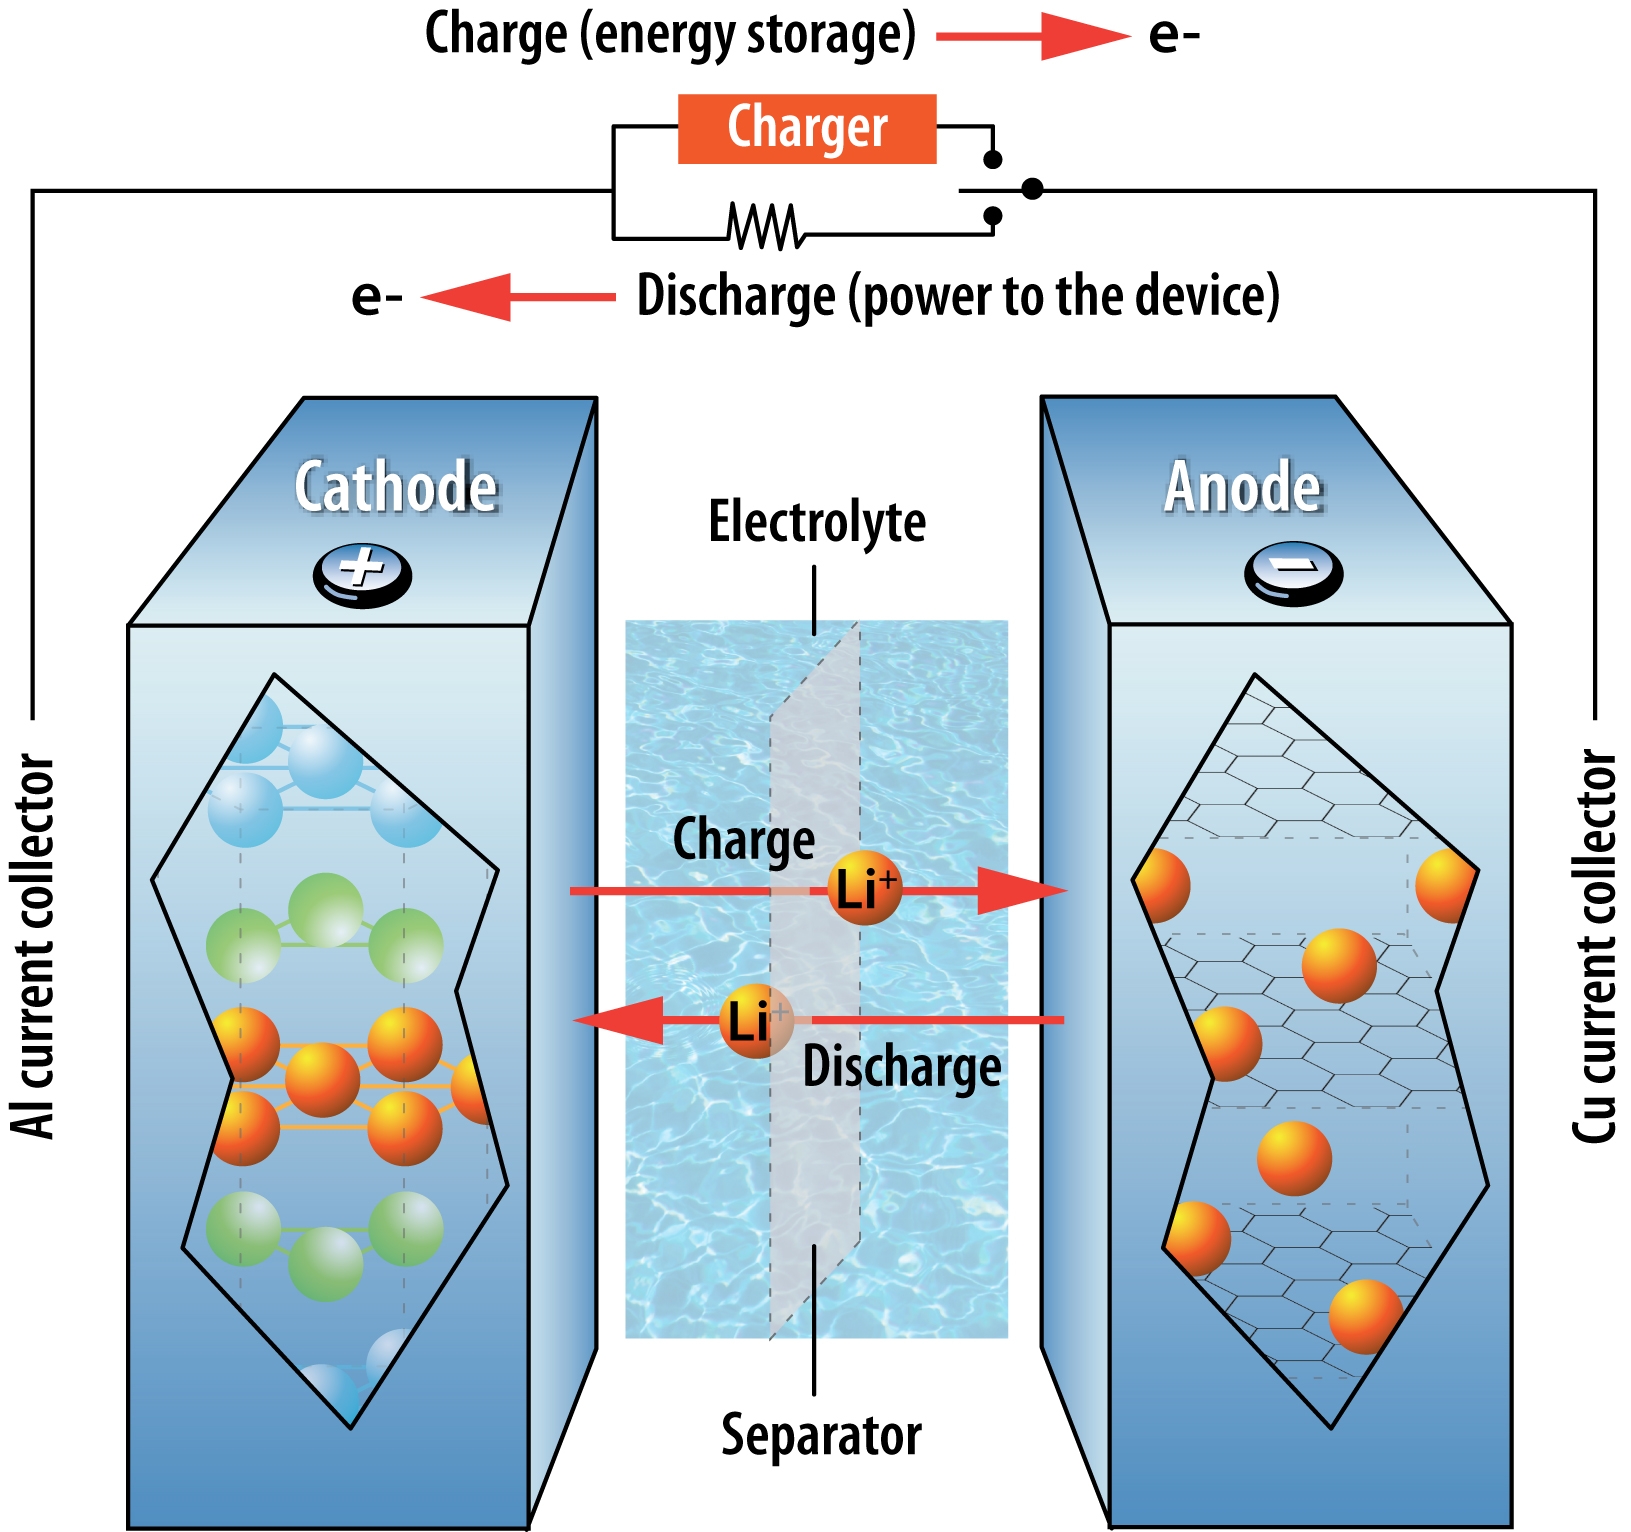 Comment fonctionne une batterie lithium-ion?